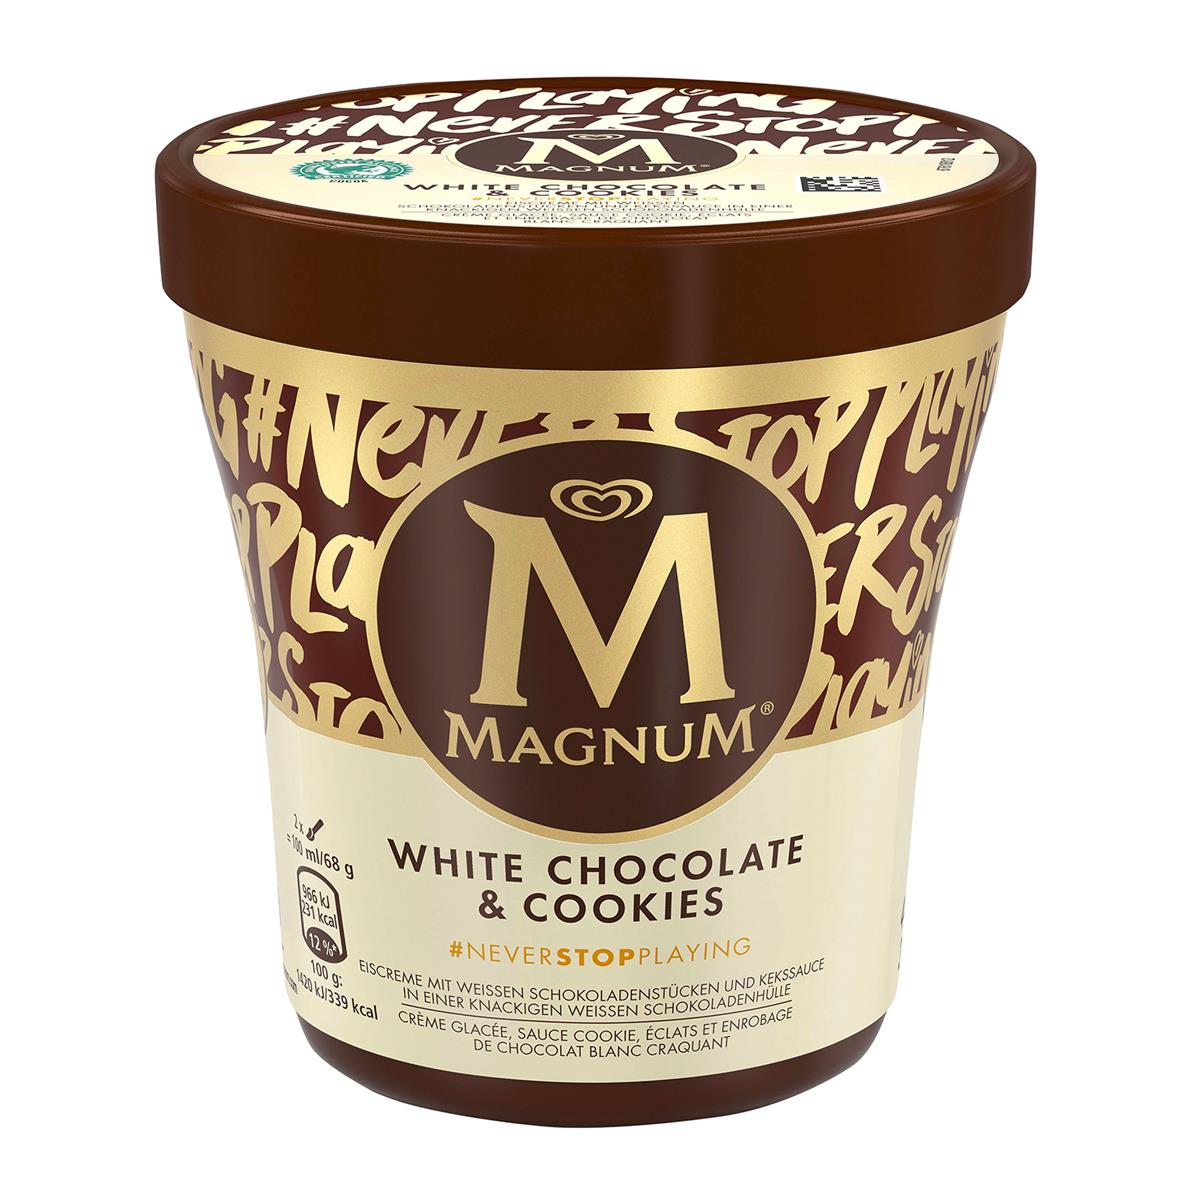 Magnum white chocolate & cookies